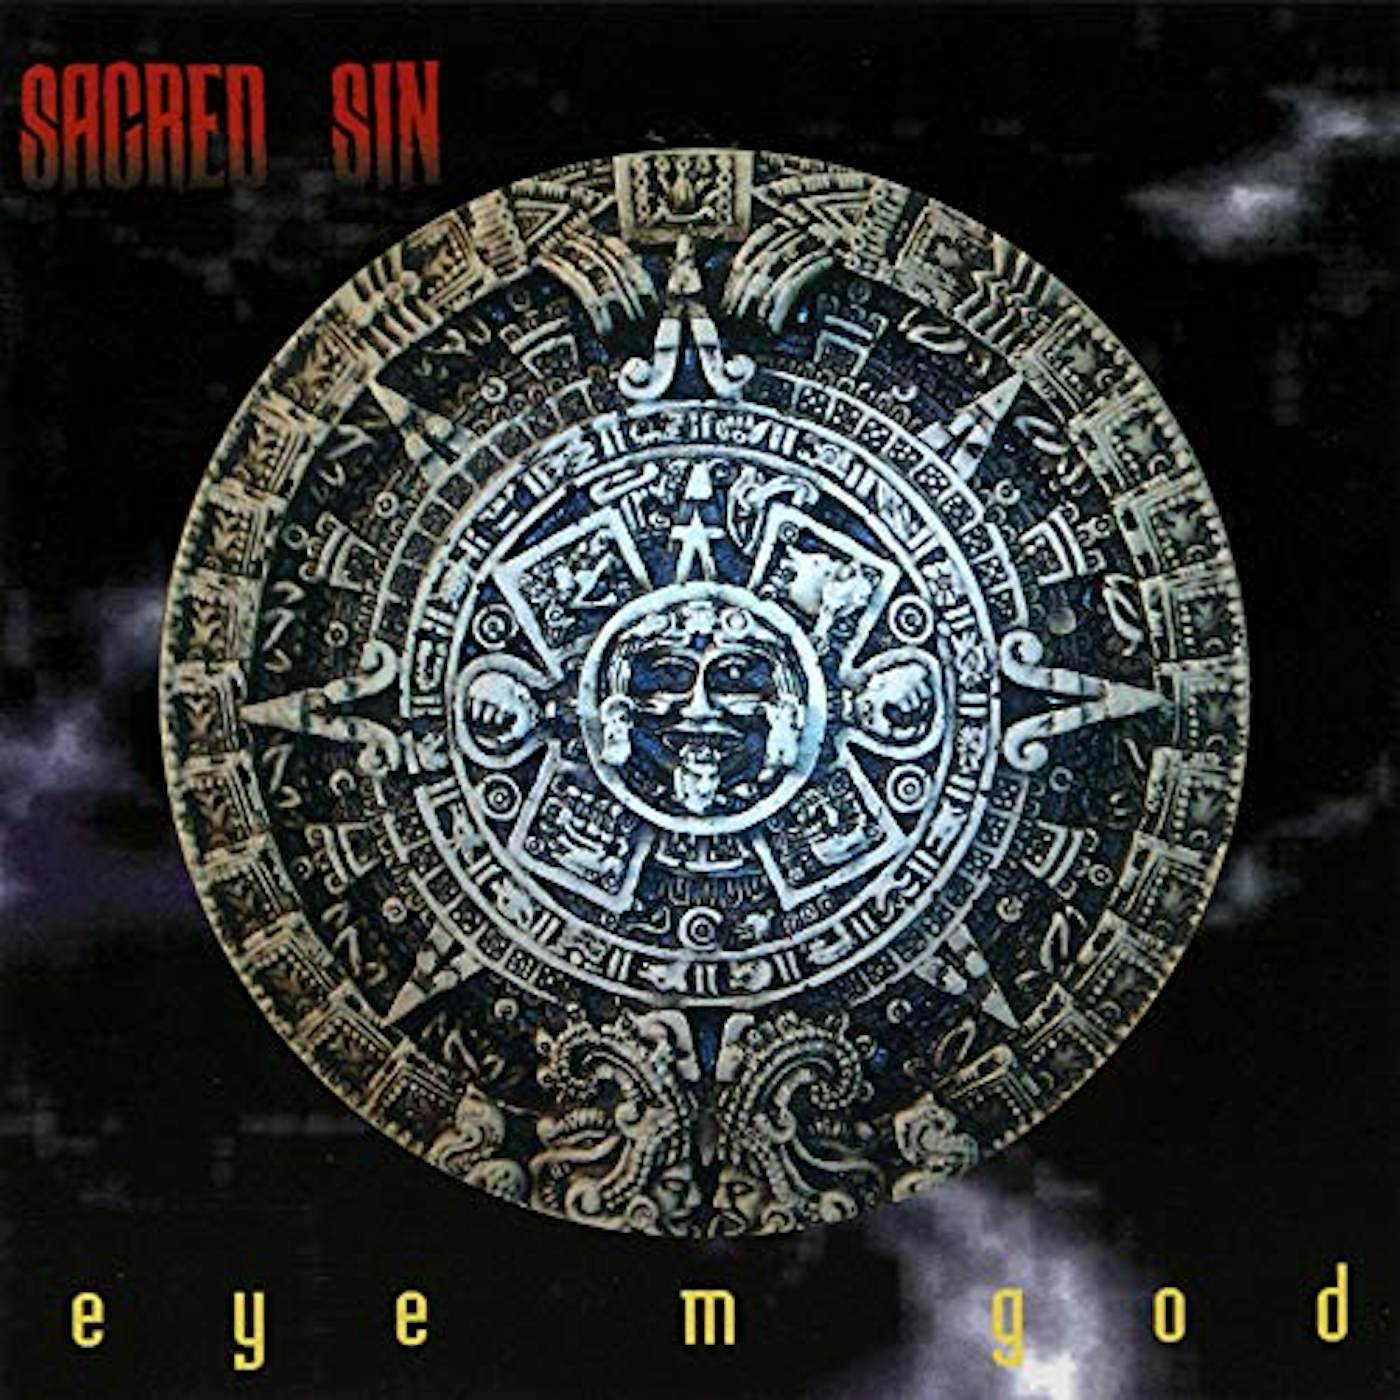 Sacred Sin Eye M God Vinyl Record